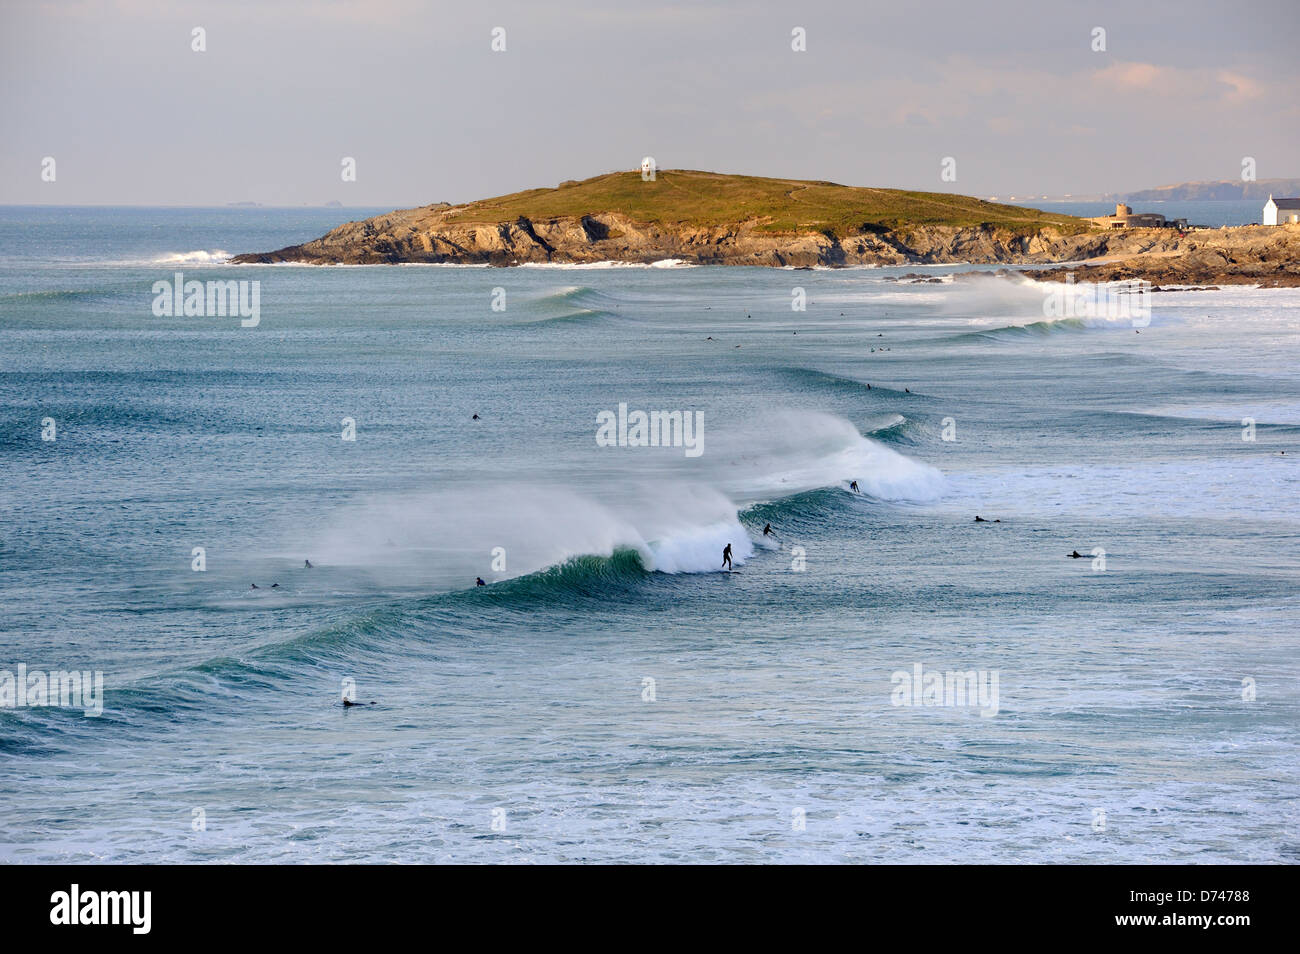 Los surfistas cabalgando las olas en la playa Fistral Cornwall Foto de stock